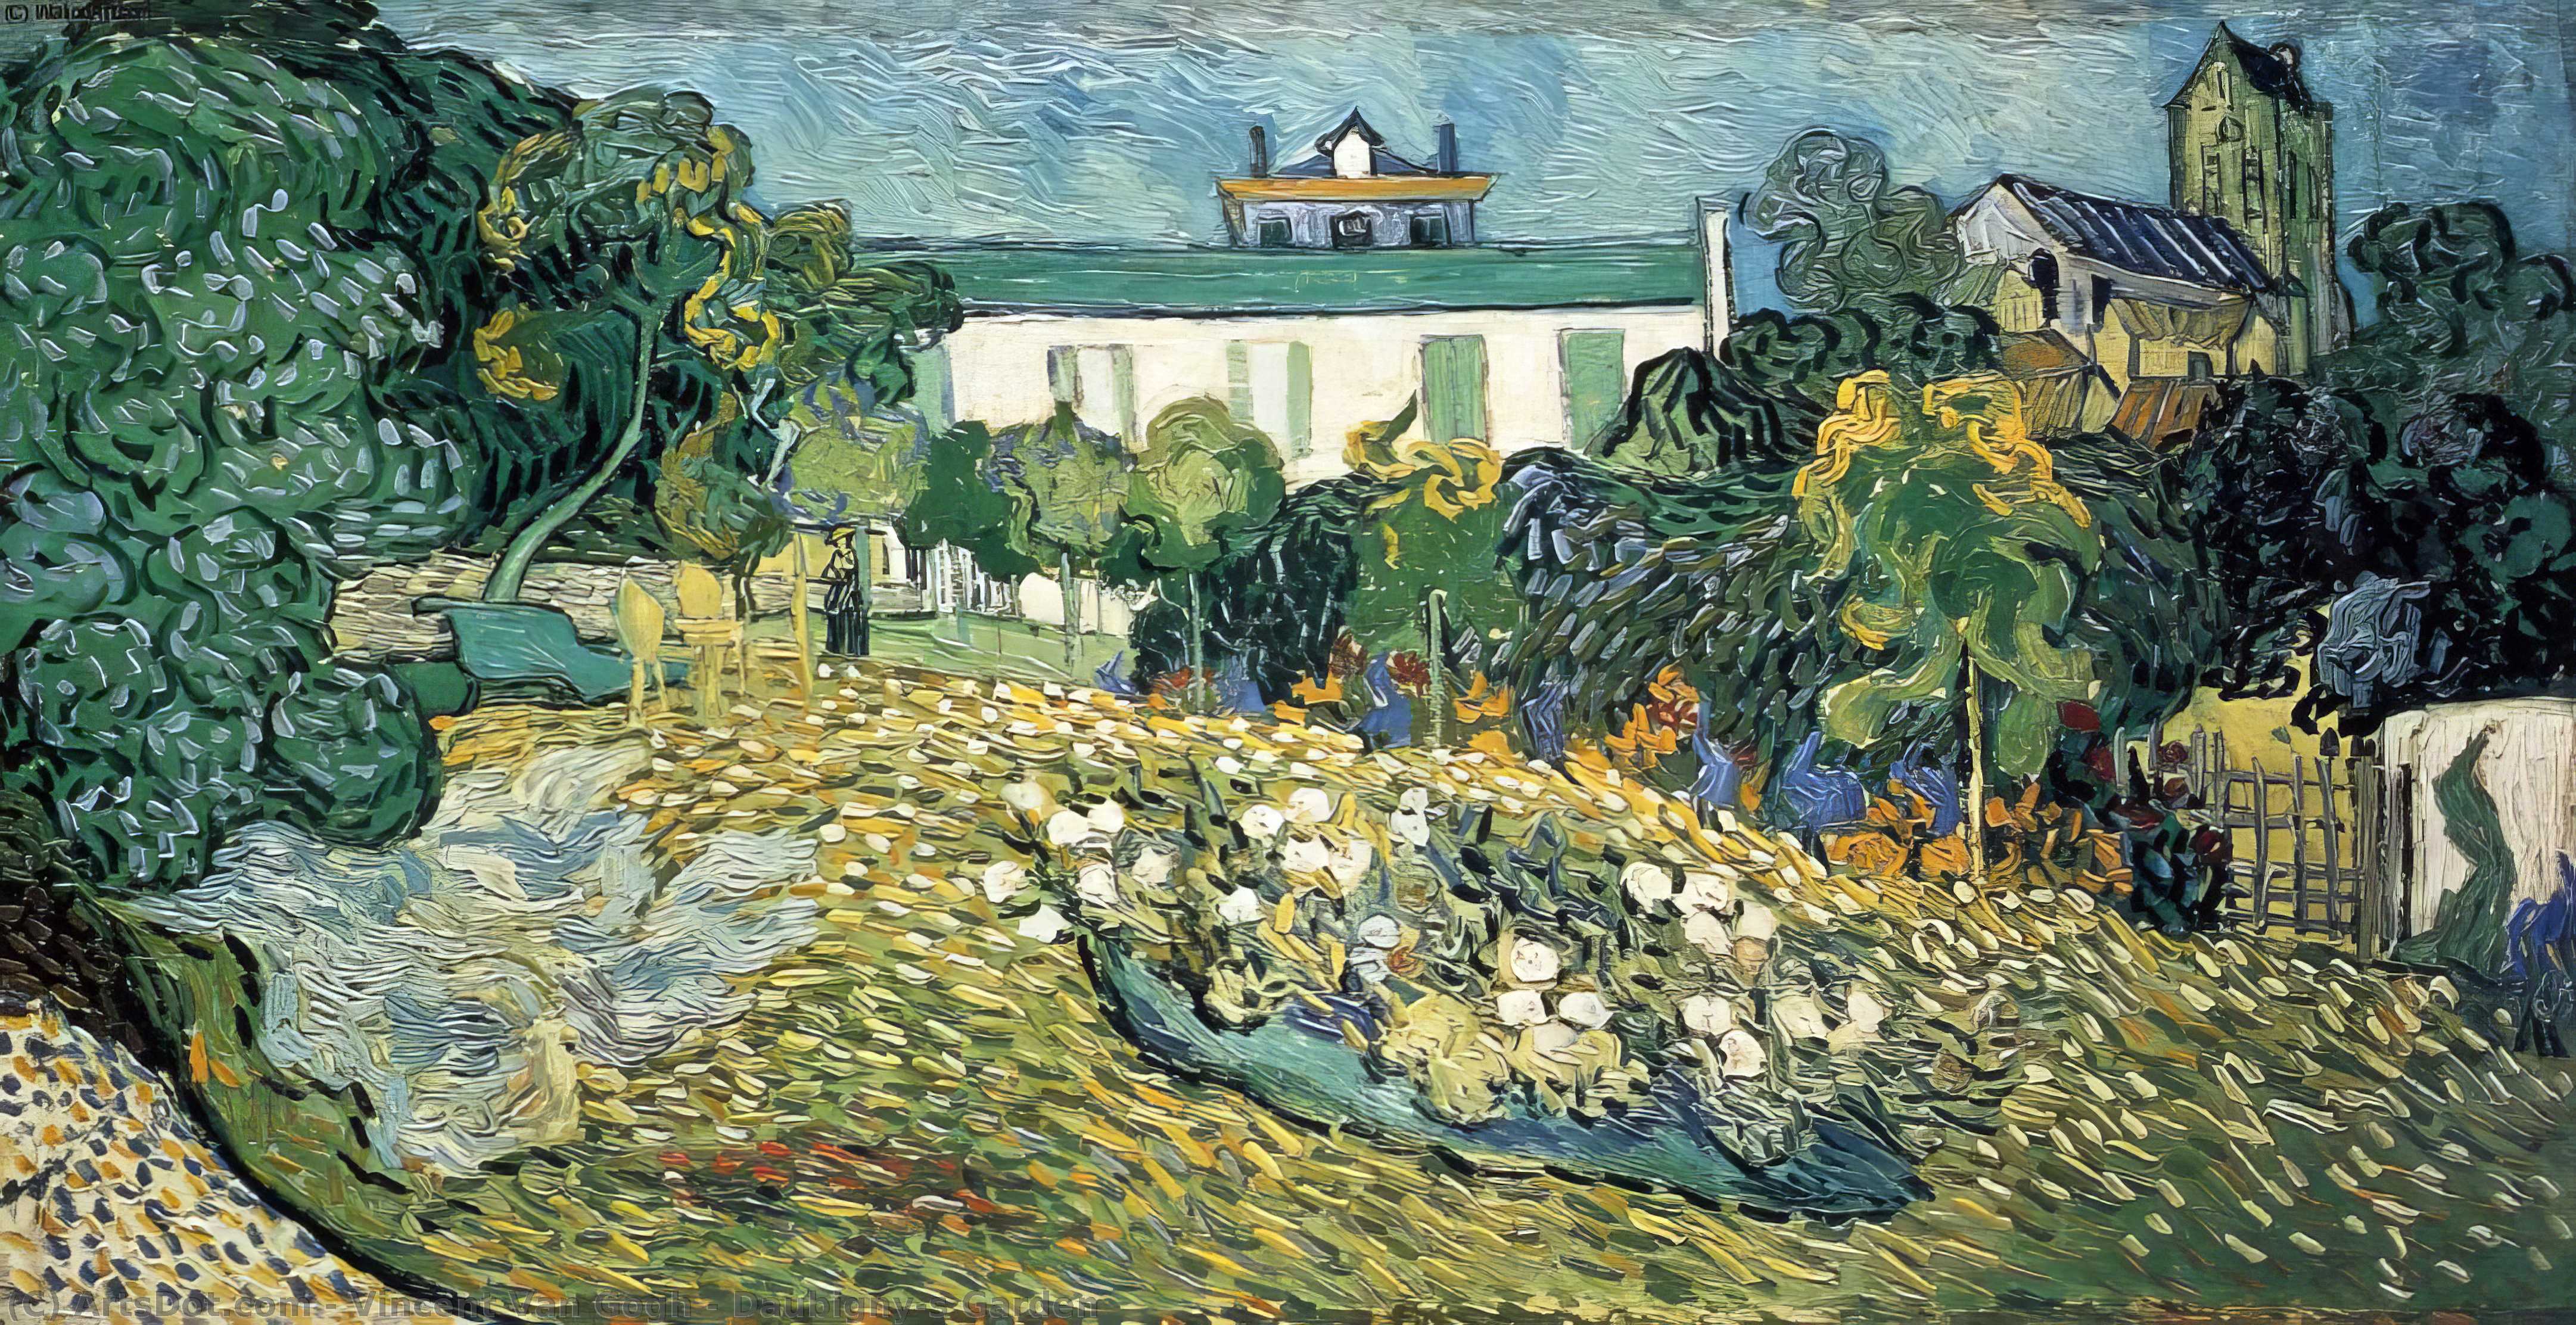 WikiOO.org - Enciklopedija likovnih umjetnosti - Slikarstvo, umjetnička djela Vincent Van Gogh - Daubigny's Garden